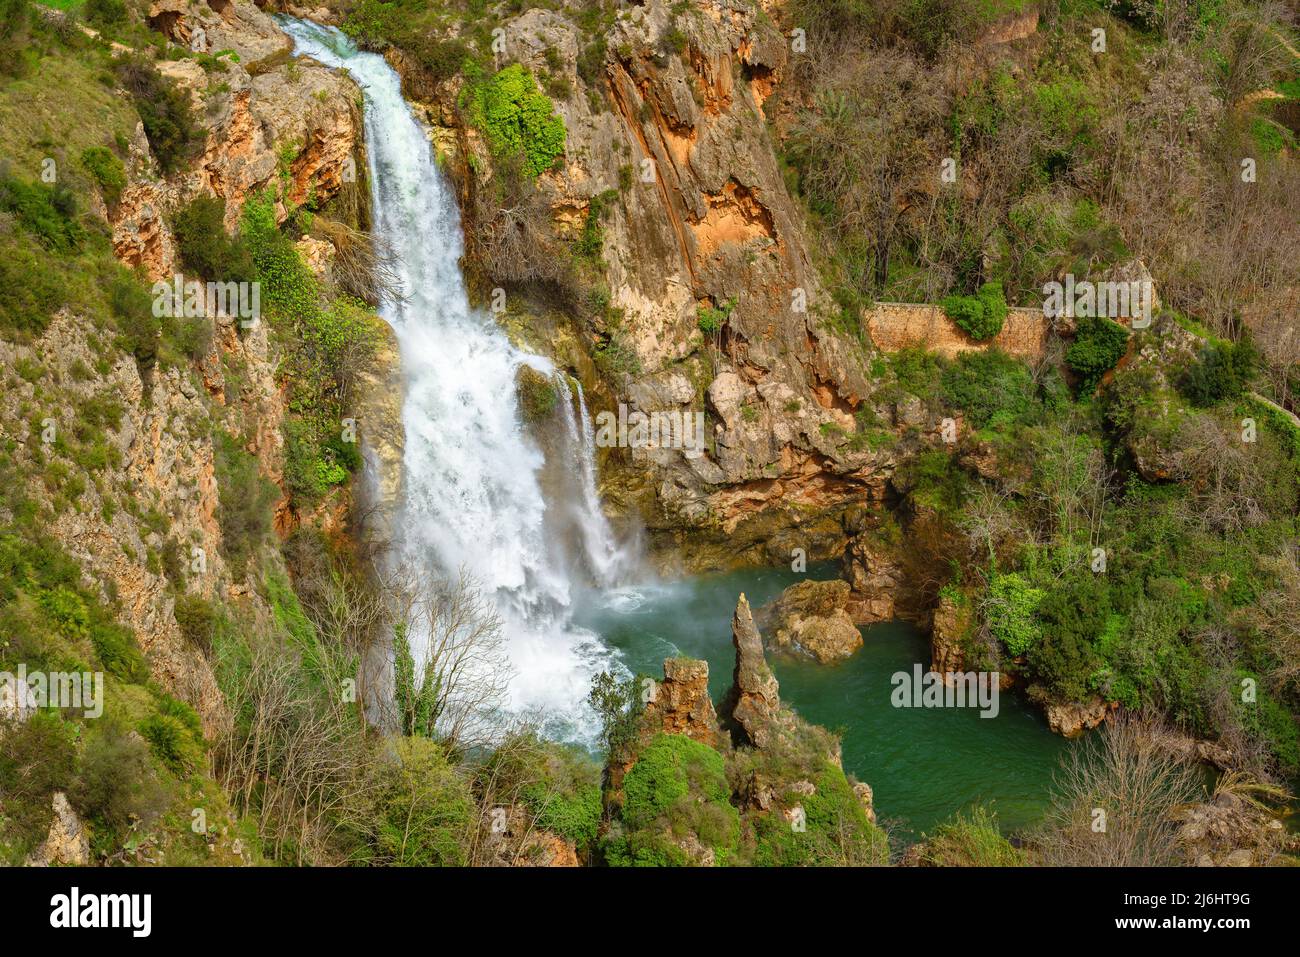 Salto de Chella, Scenic view of a waterfall in Valencian Community Stock Photo